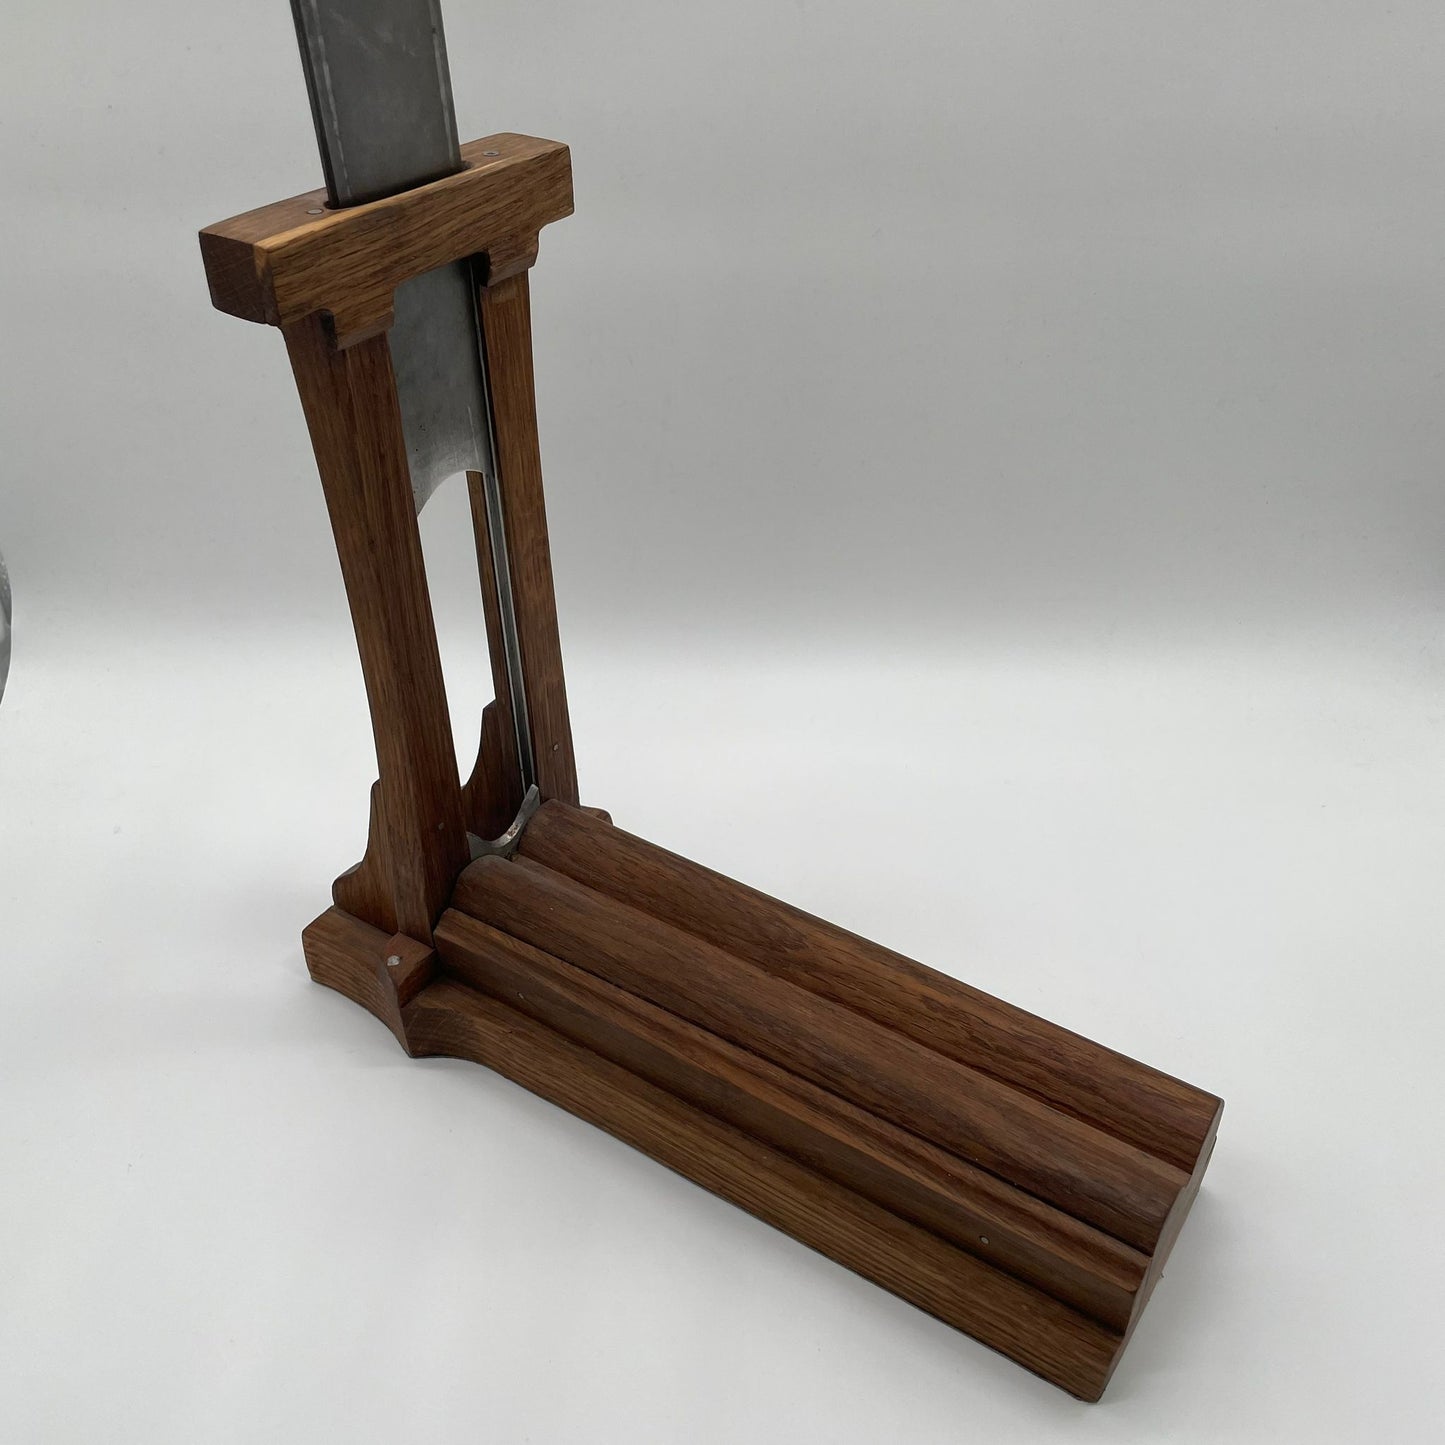 
                  
                    Zigarren Schneider Fallbeil oder Guillotine (Cutter) handgefertigtes Unikat vom Künstler aus Holz
                  
                